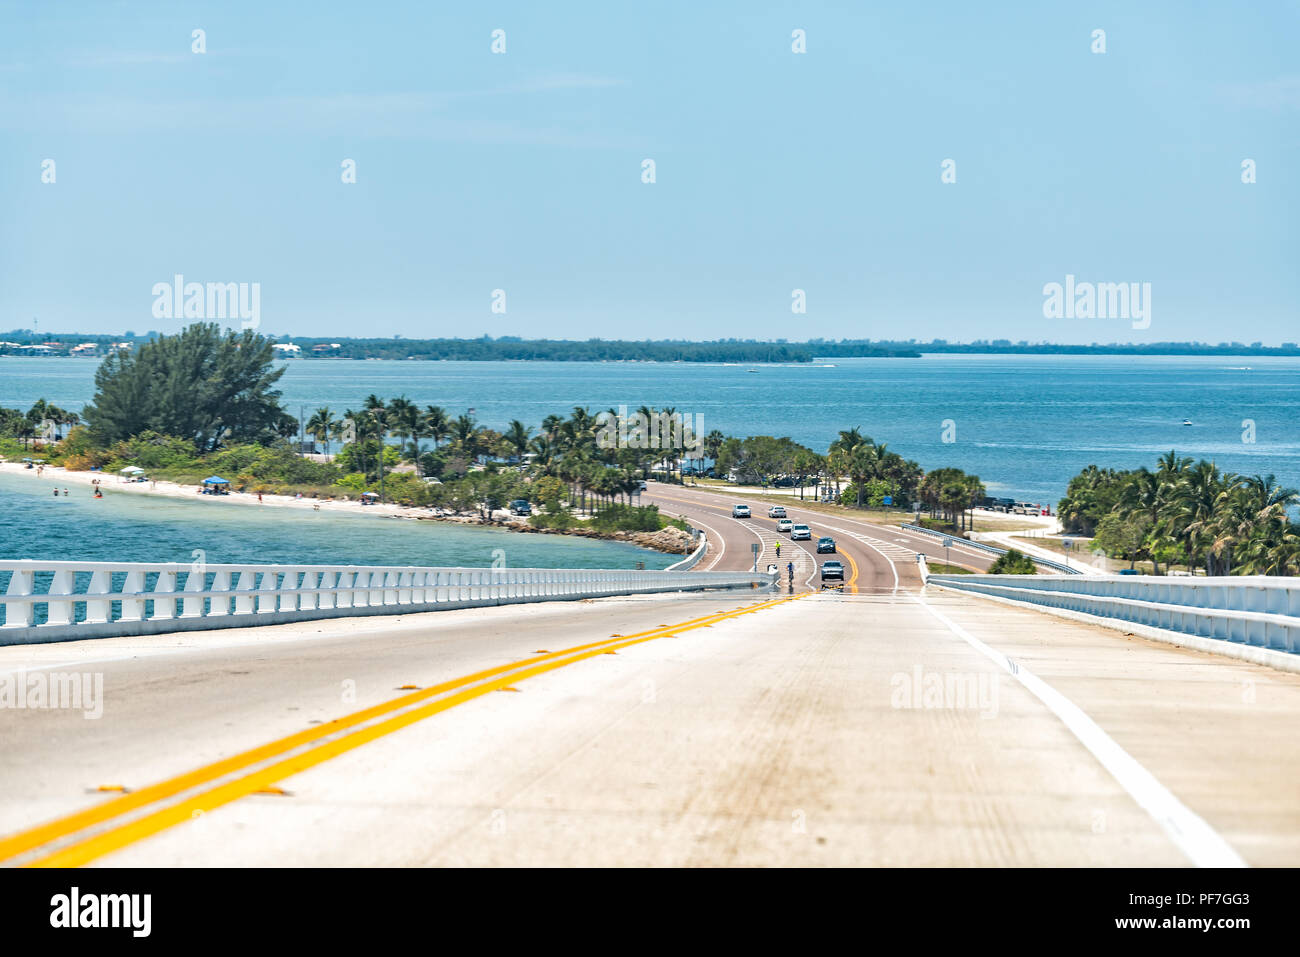 En Sanibel Island, EE.UU. bahía durante el día soleado, puente de peaje Autopista camino Causeway, agua turquesa, coches Foto de stock